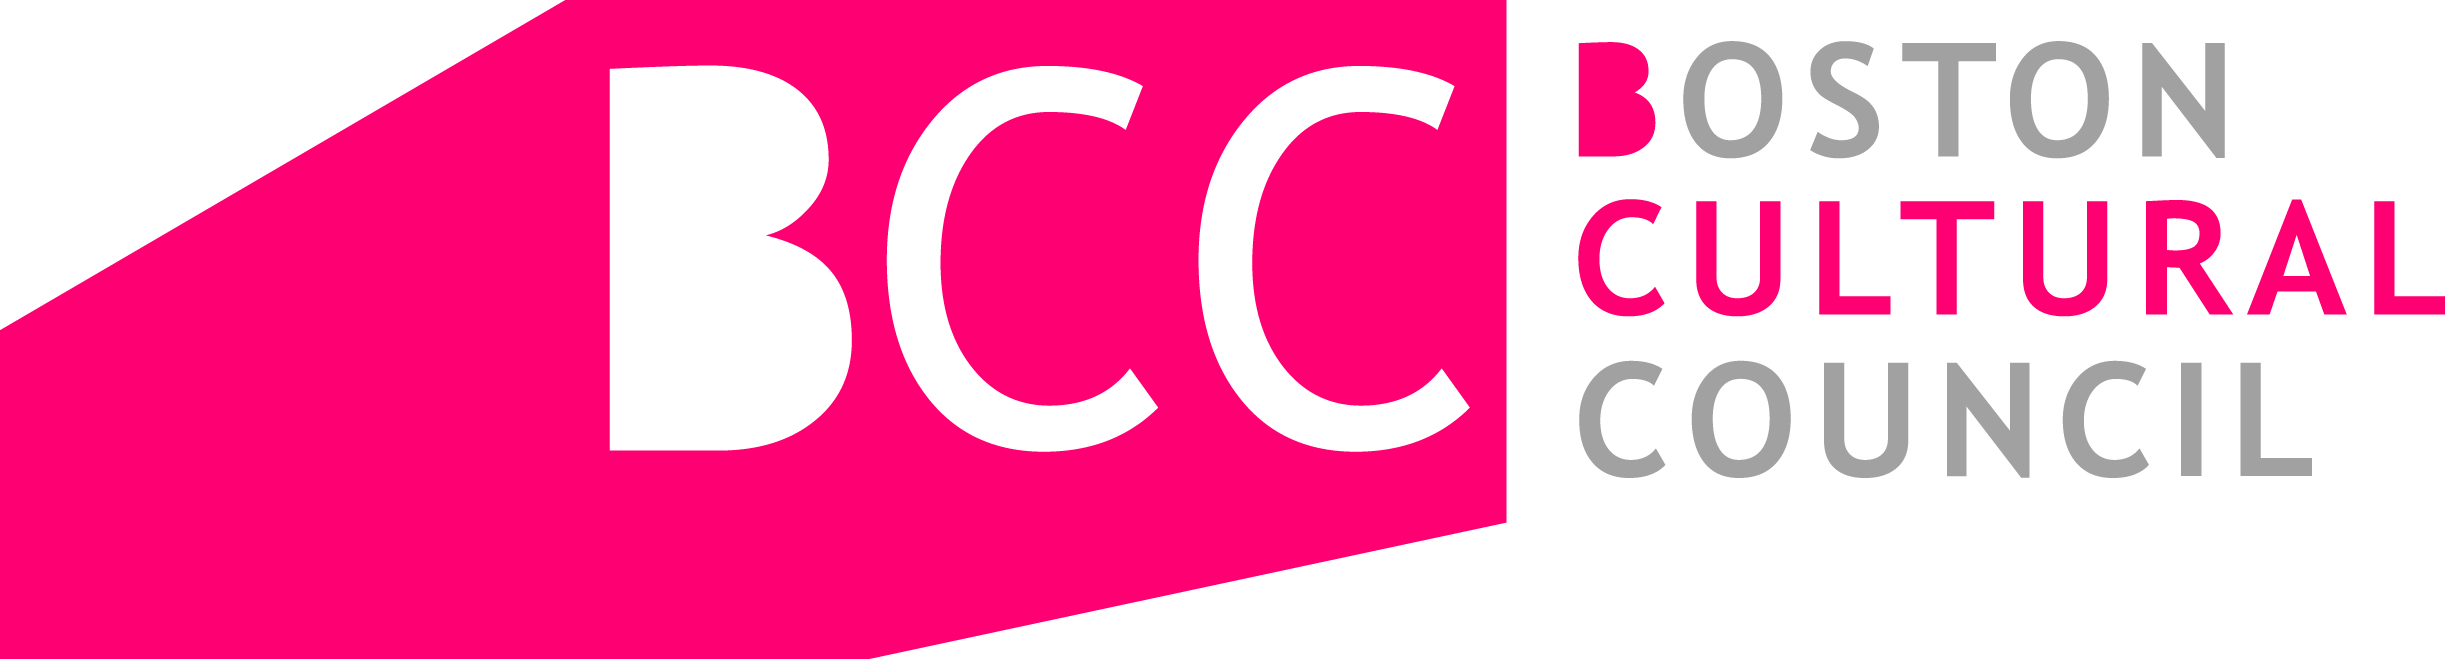 Boston Cultural Council Logo.jpg